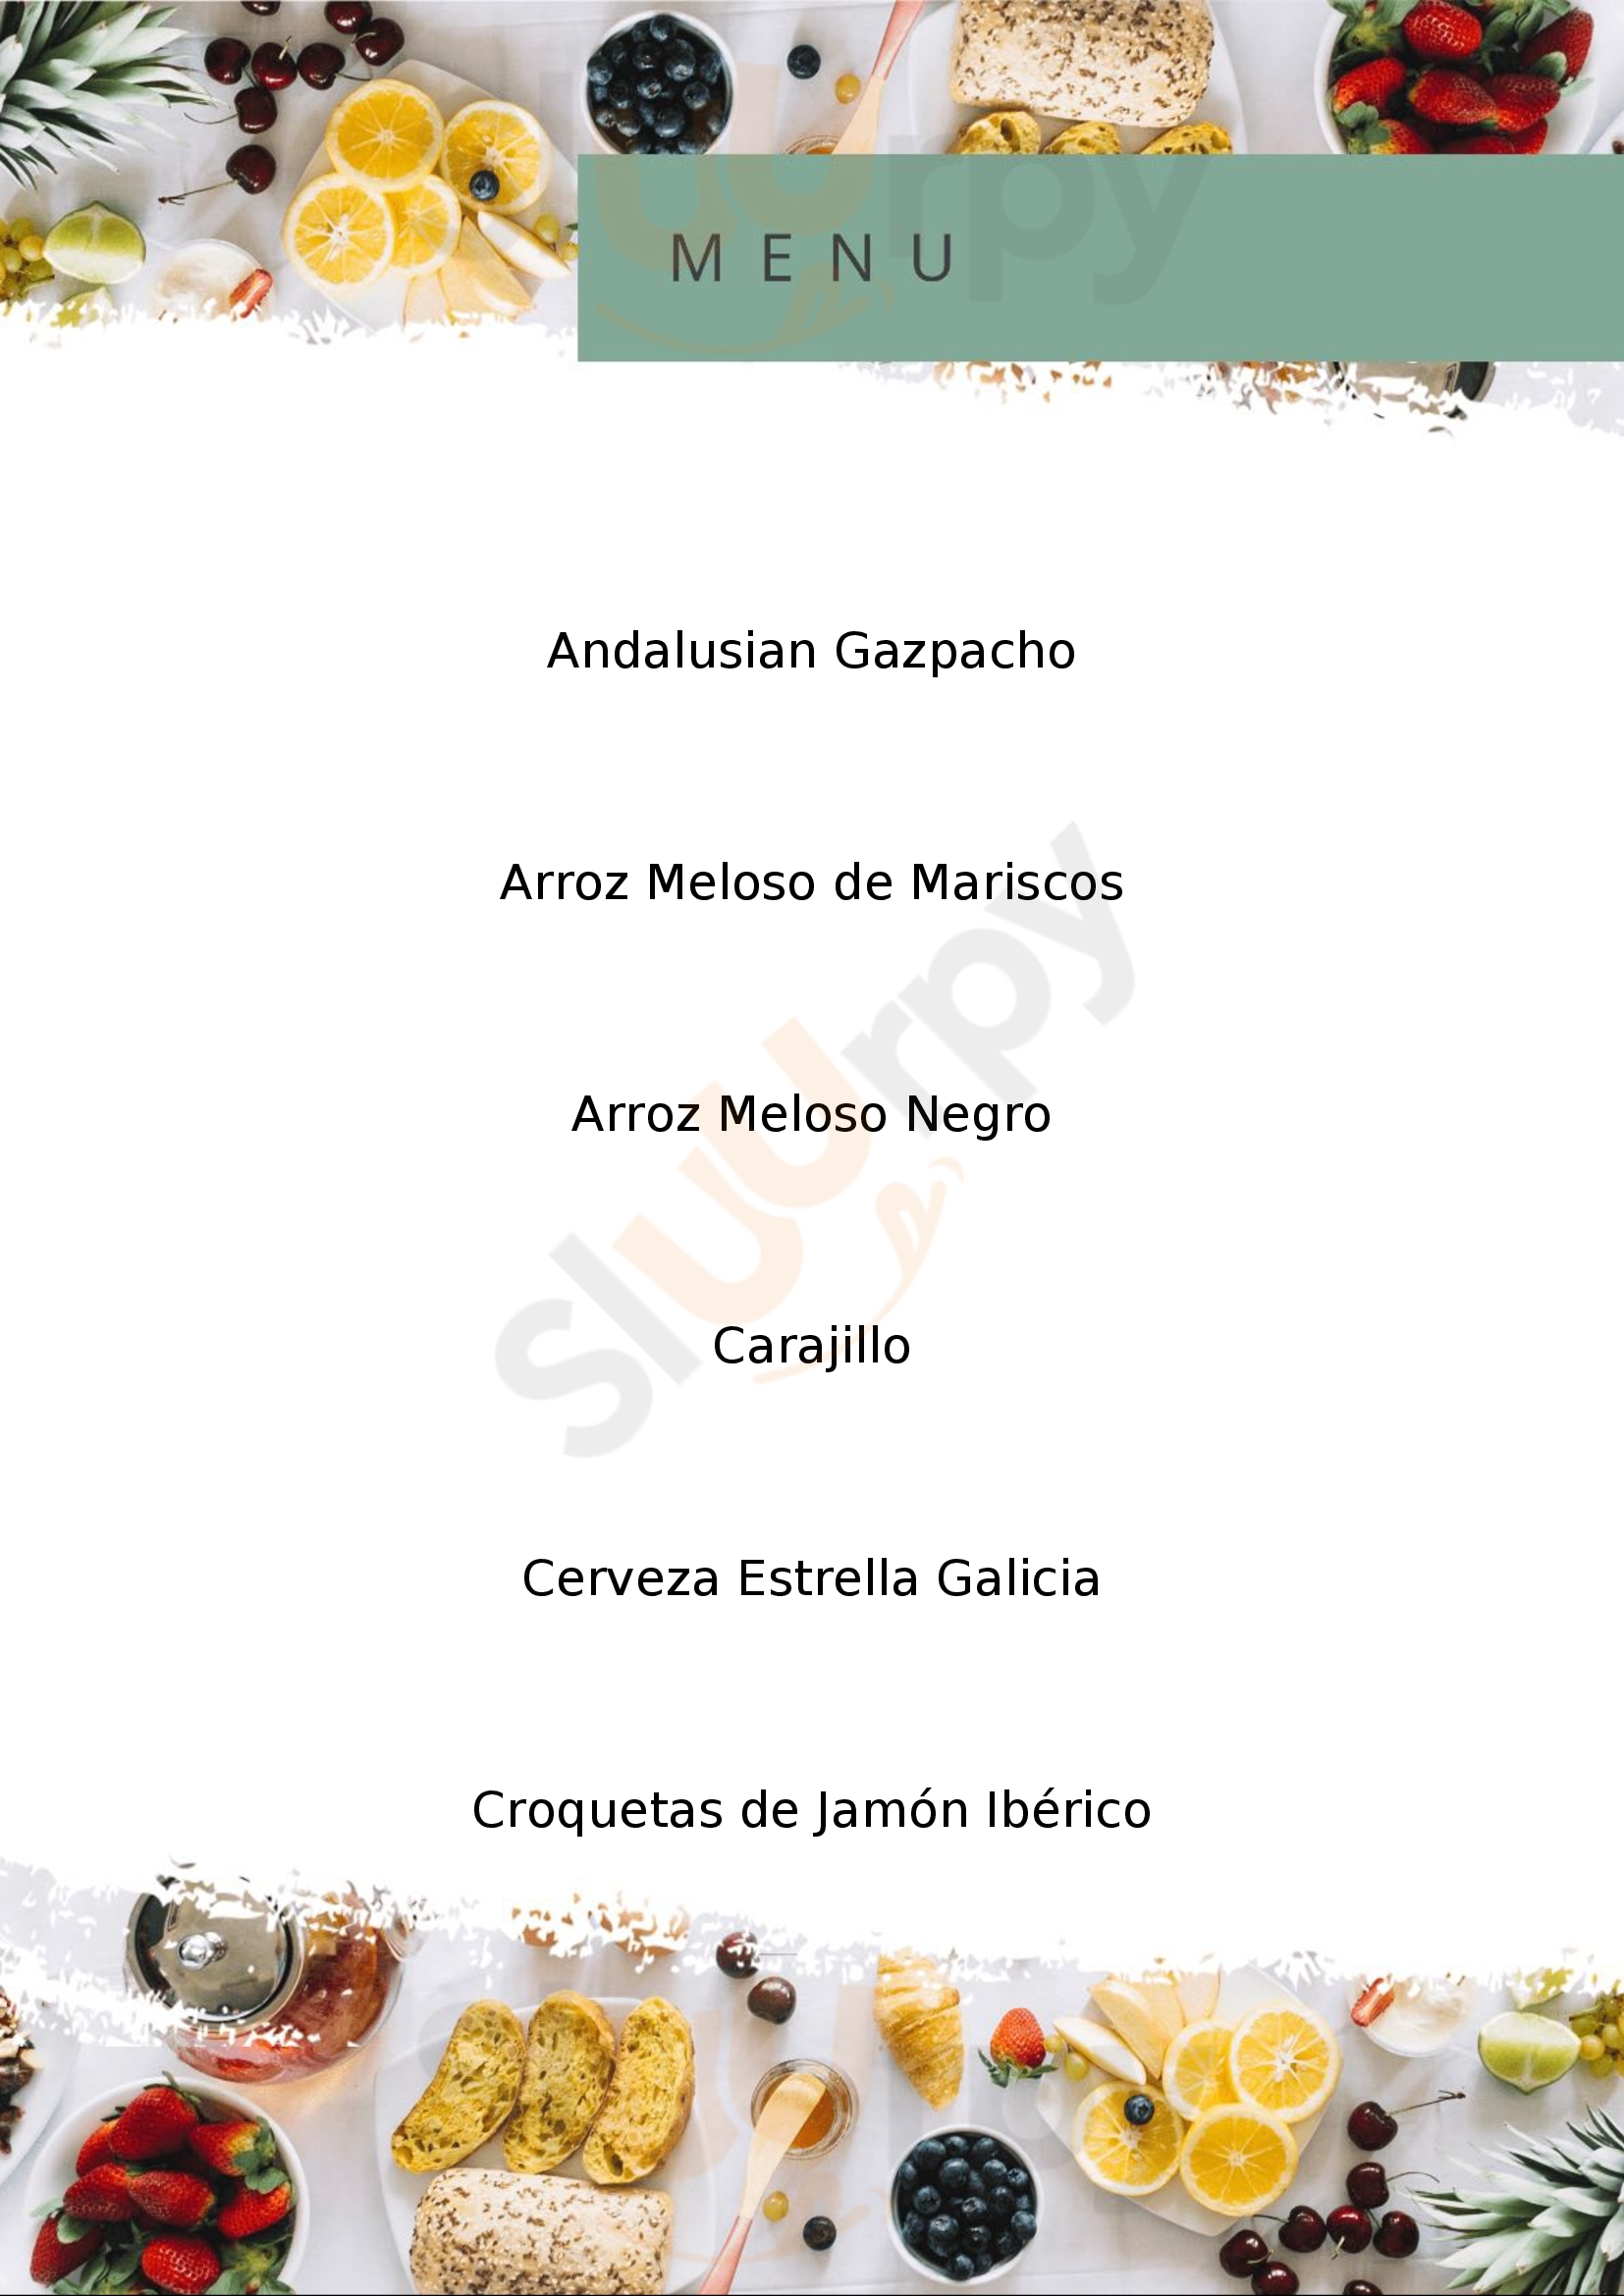 Bulla Gastronómica - San Miguel De Allende San Miguel de Allende Menu - 1